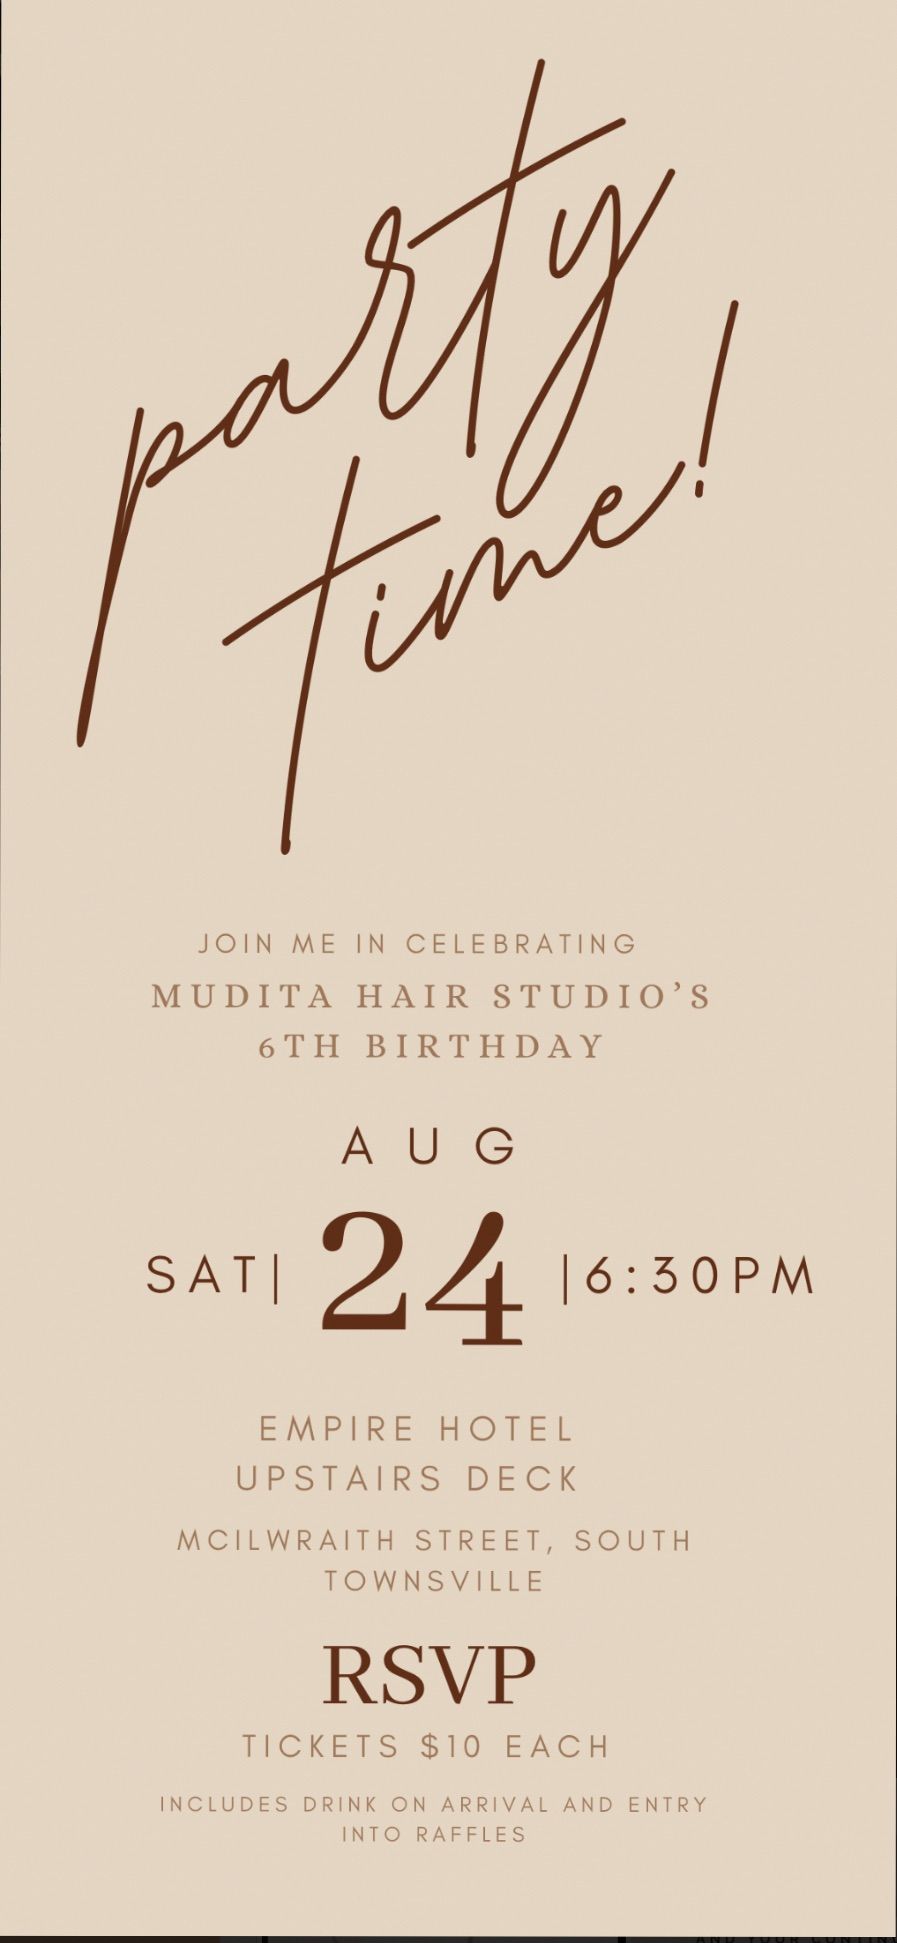 Mudita Hair Studio's 6th Anniversary Party